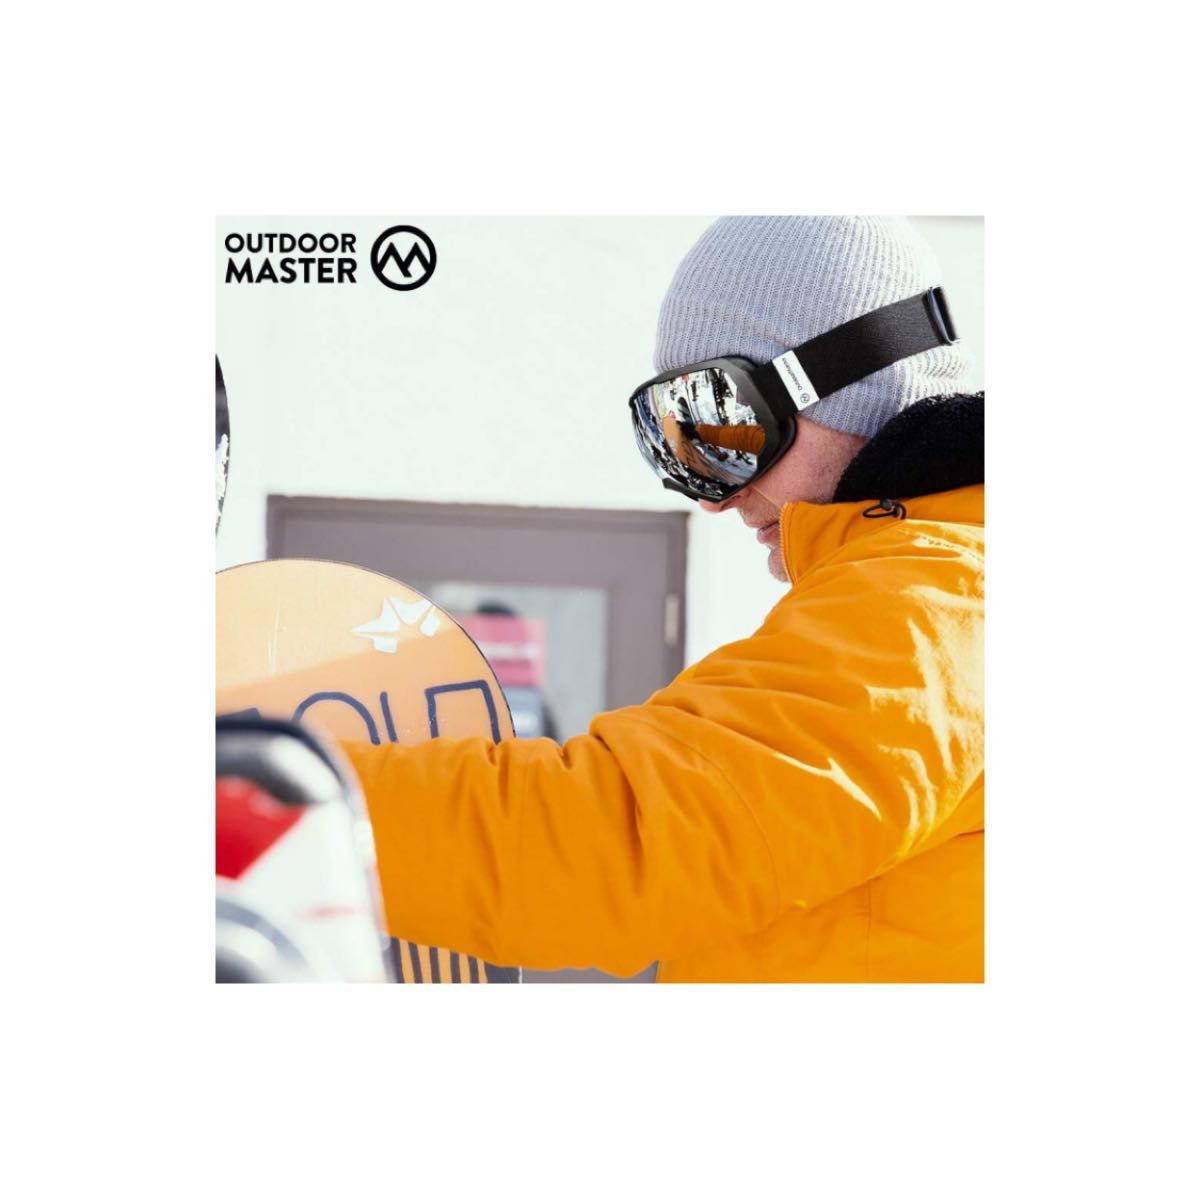 OutdoorMaster スキーゴーグル 両層レンズ UV紫外線カット メガネ対応 曇り止め 180°広視野 男女兼用